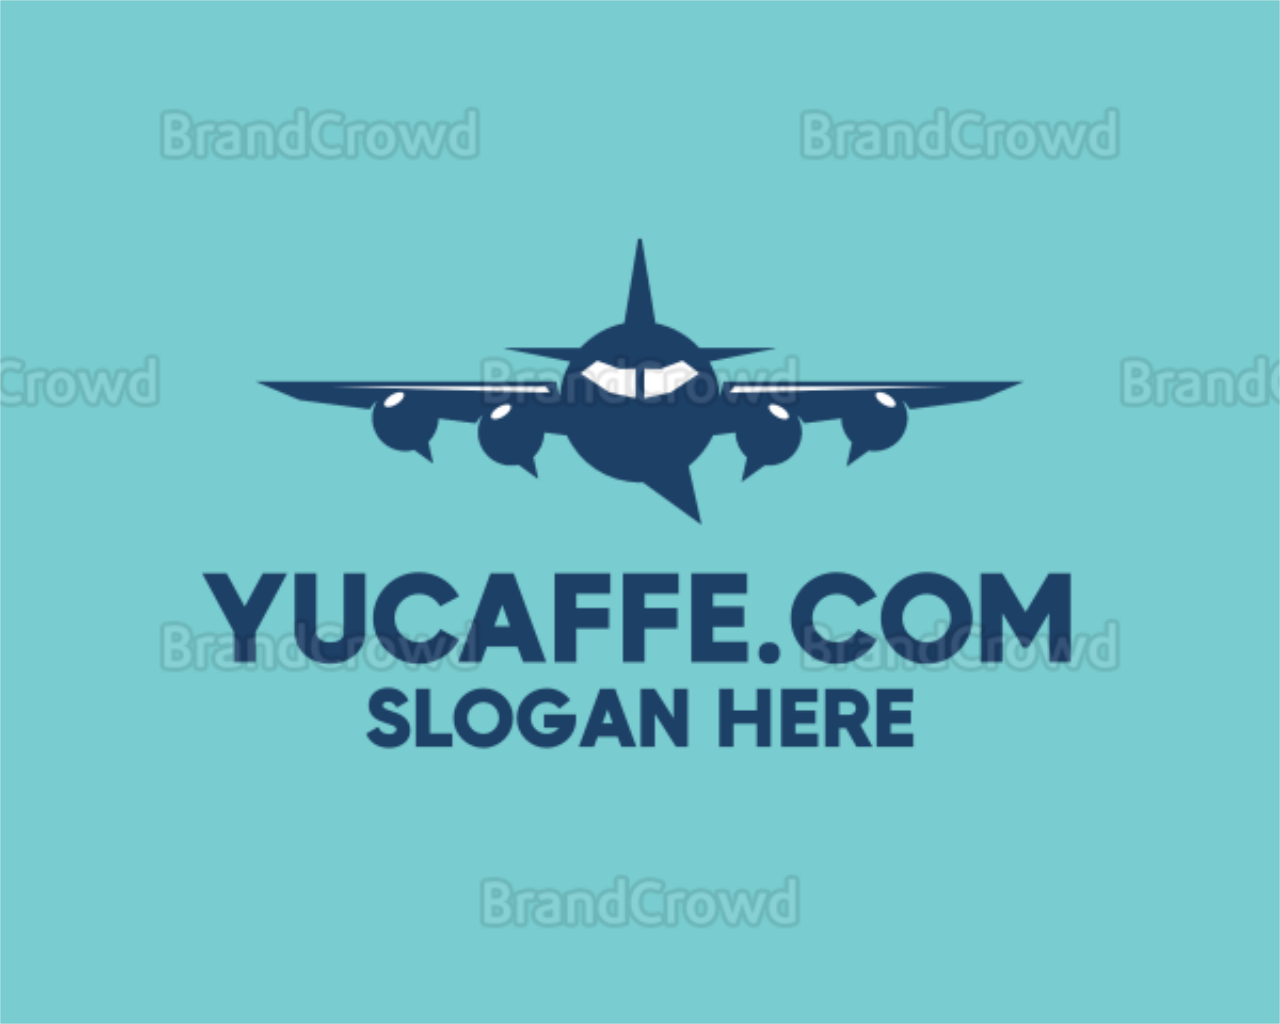 yucaffe.com's logo